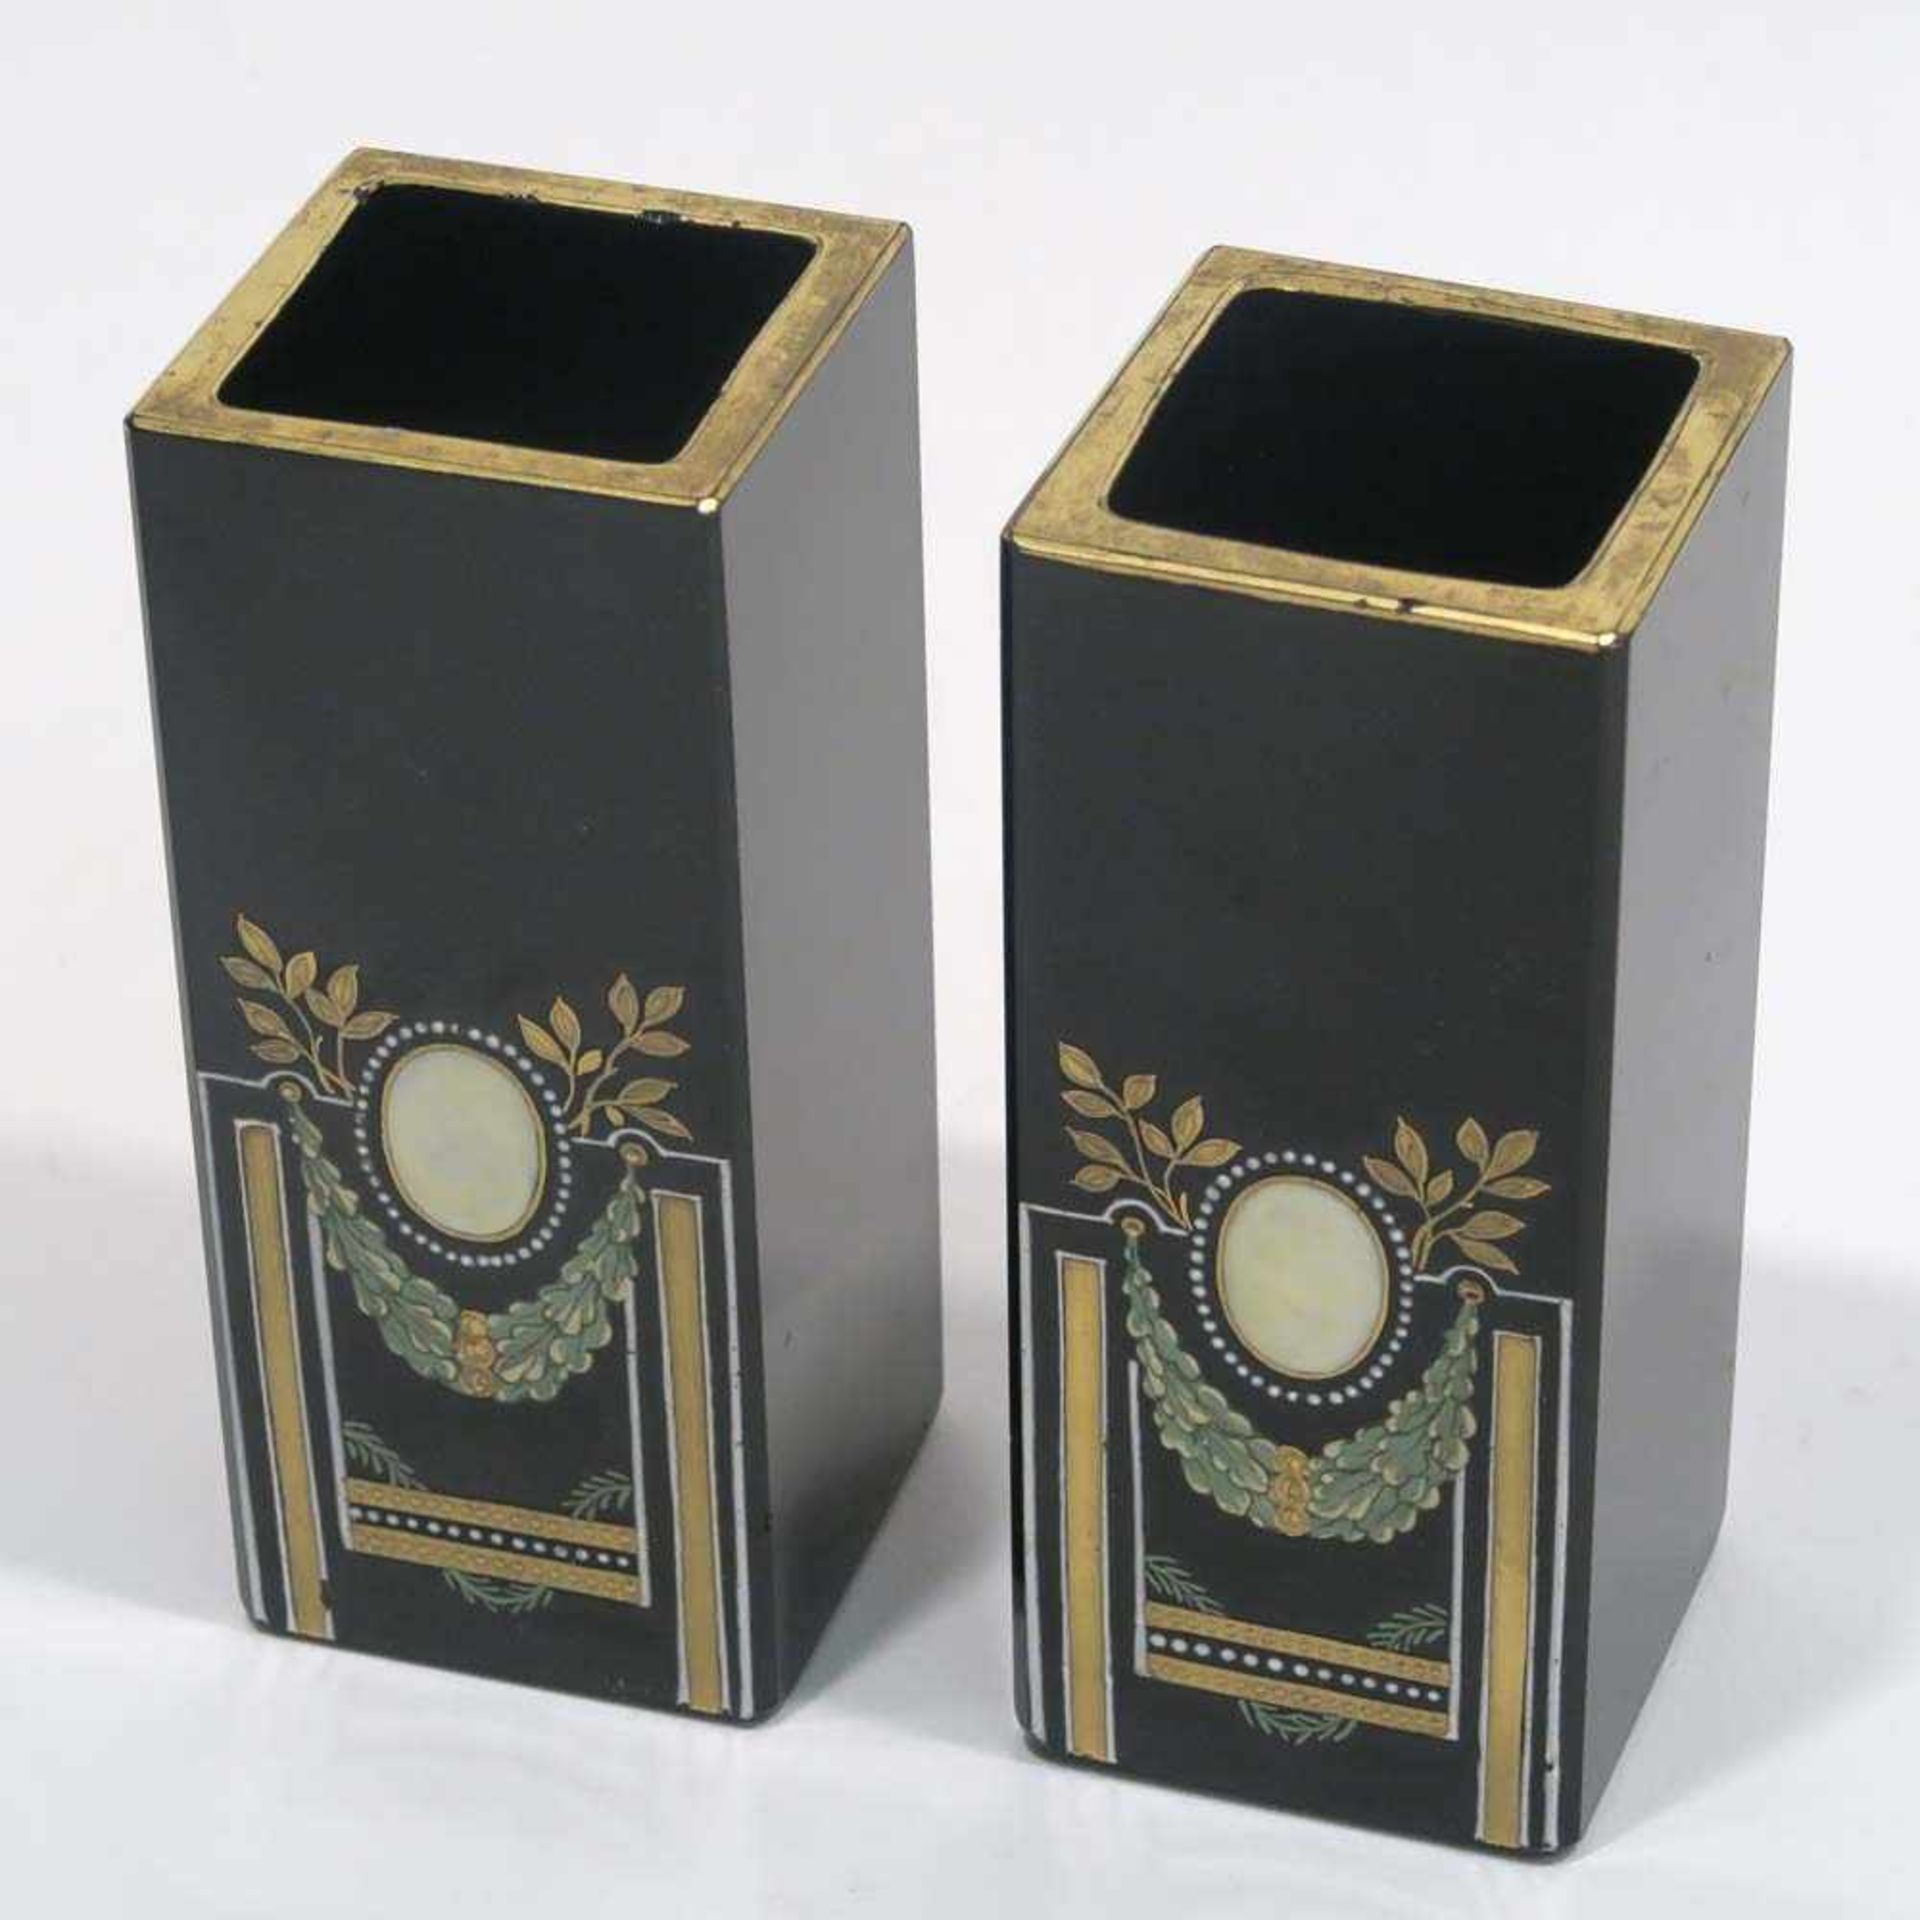 Paar kleine GlasvasenWohl Josef Riedel, Polaun, um 1900. Schwarzes Glas, Emailmalerei in gold,